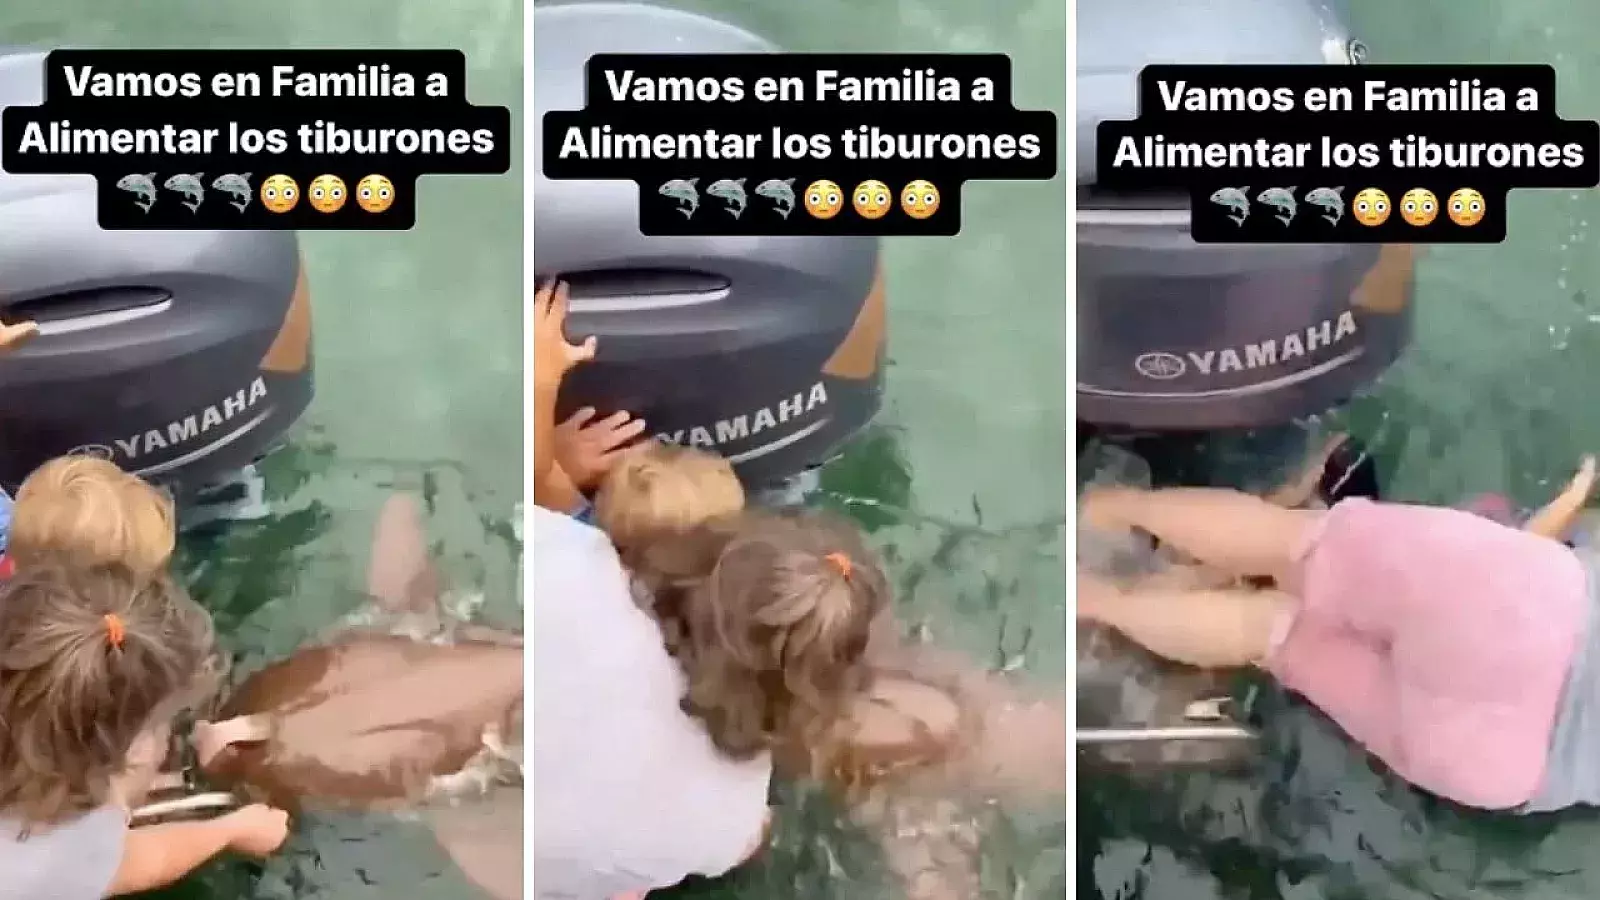 Fuertes imágenes: Llevó a su hija a alimentar tiburones y casi la pierde